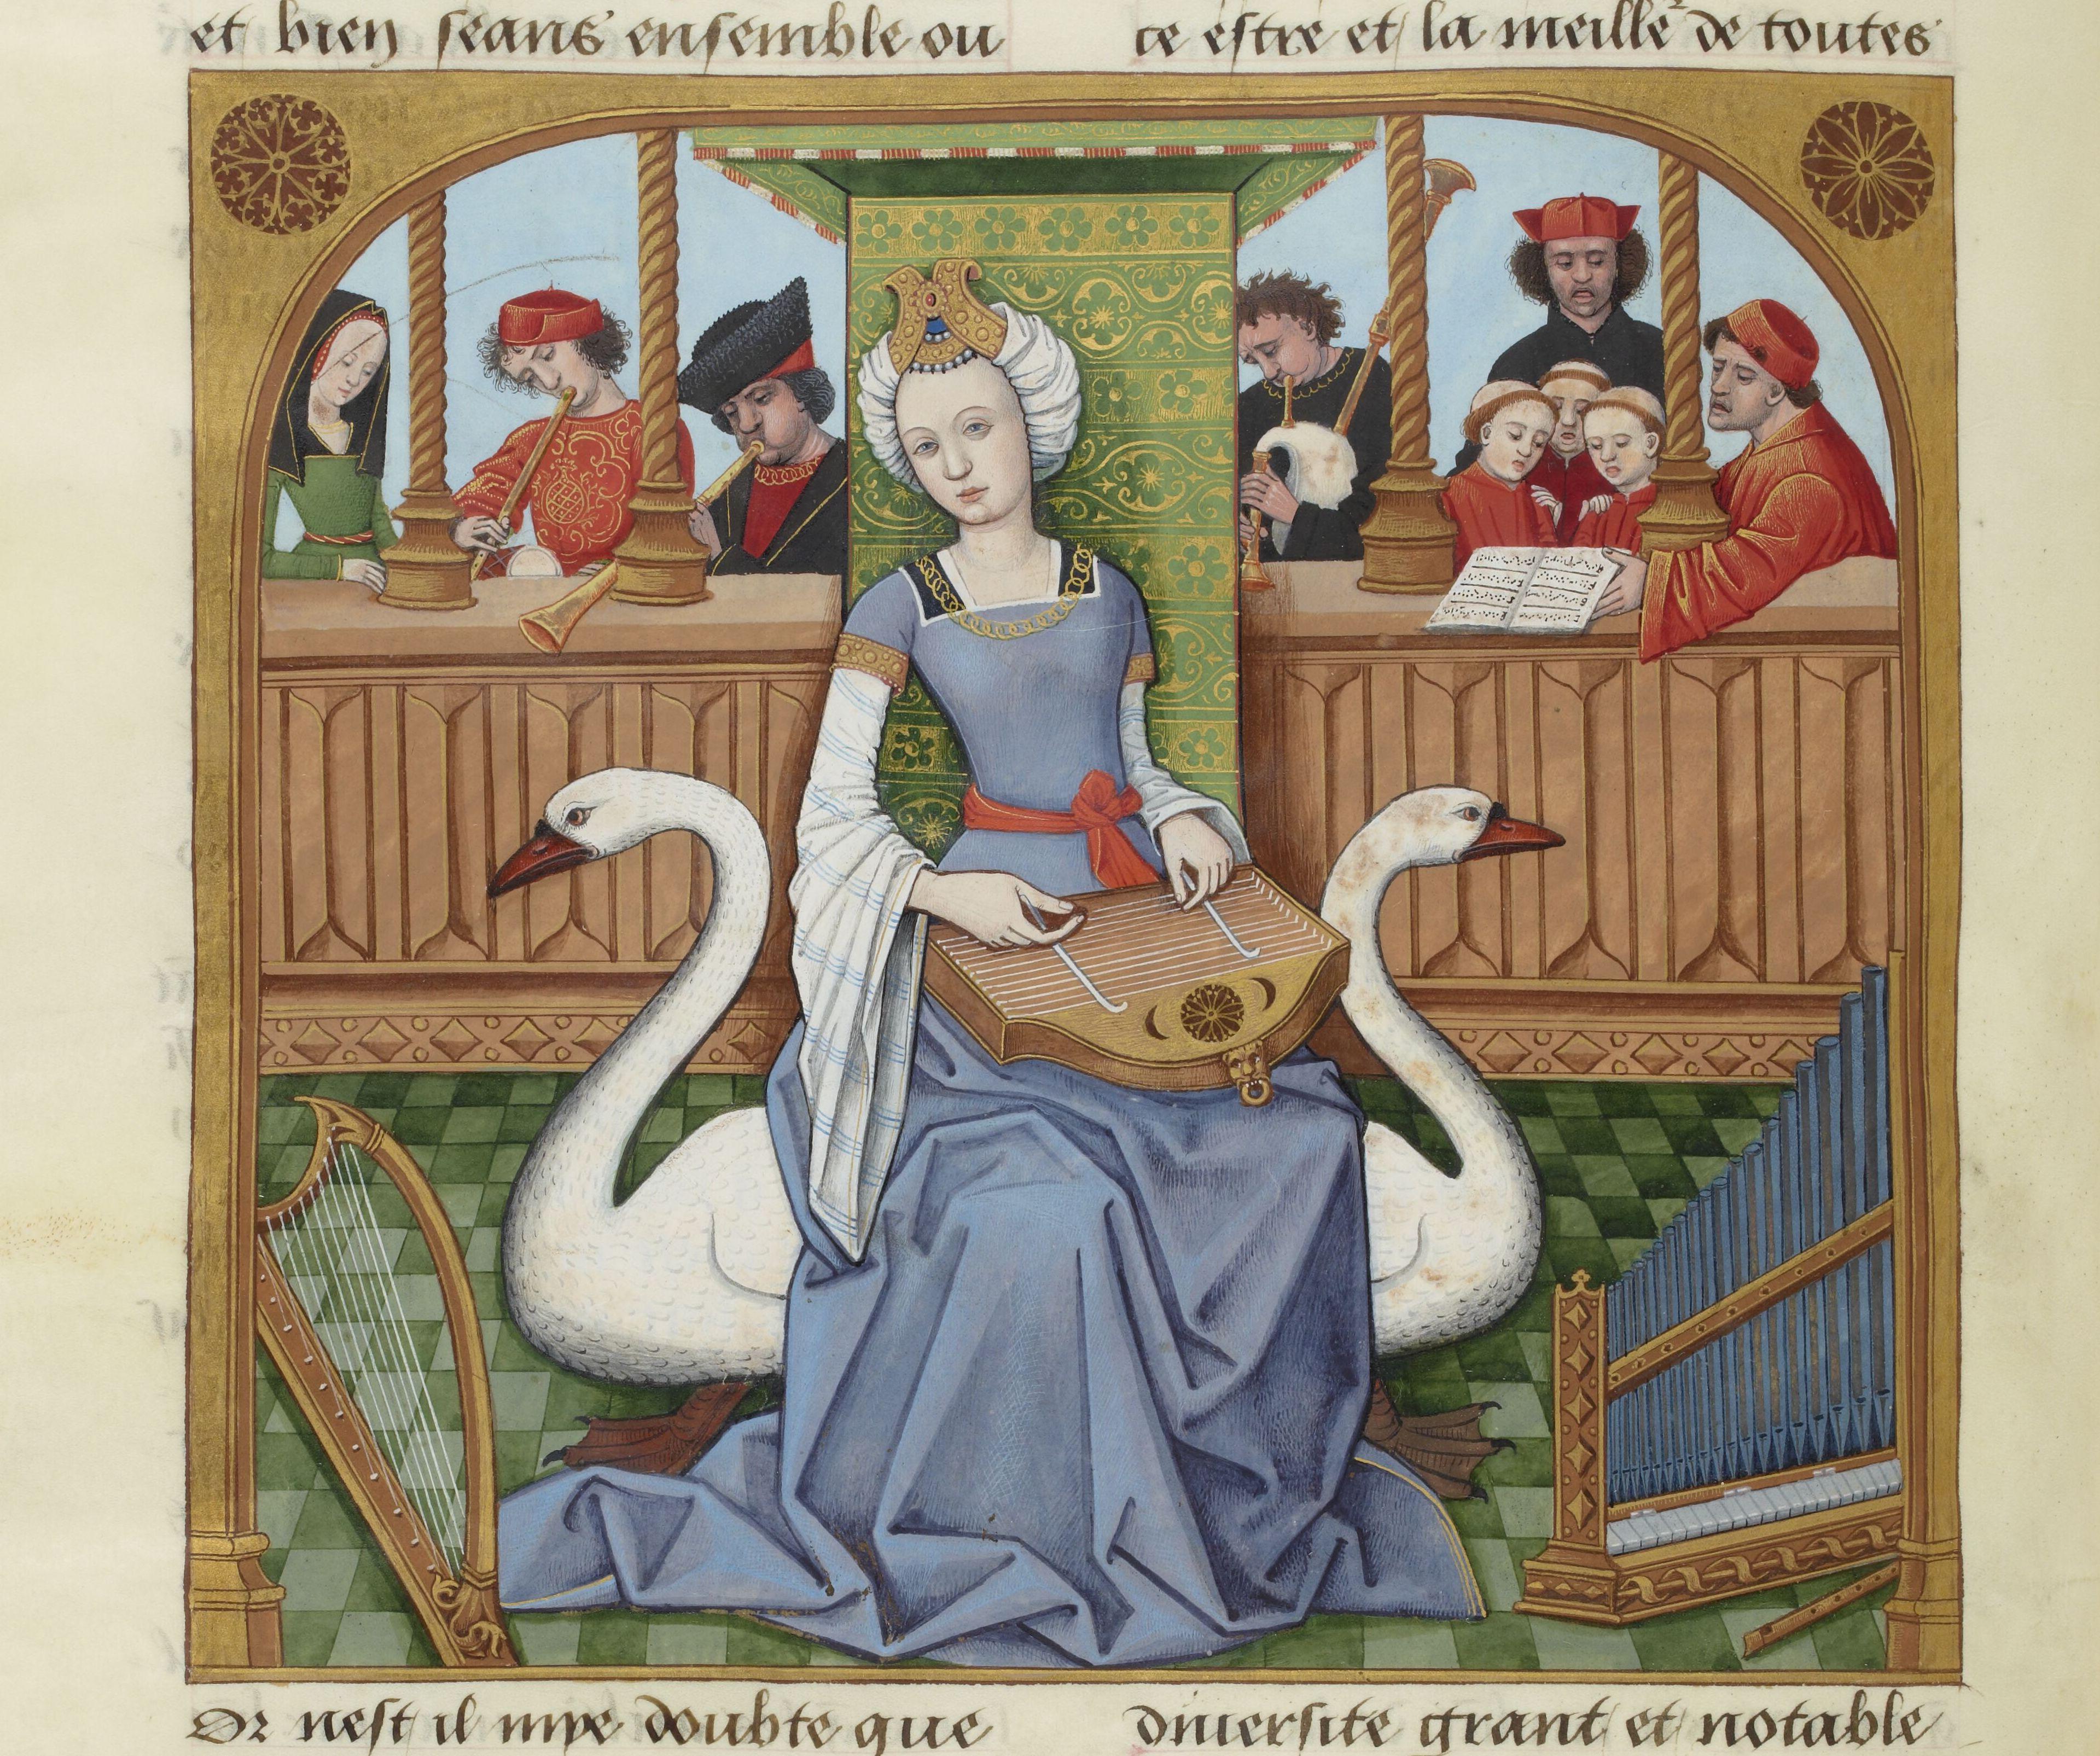 Robinet Testard, Αλληγορία της Μουσικής, Evrart de Conty, Livre des échecs amoureux moralisés, BnF MS Fr. 143, Bibliothèque nationale de France, Παρίσι.